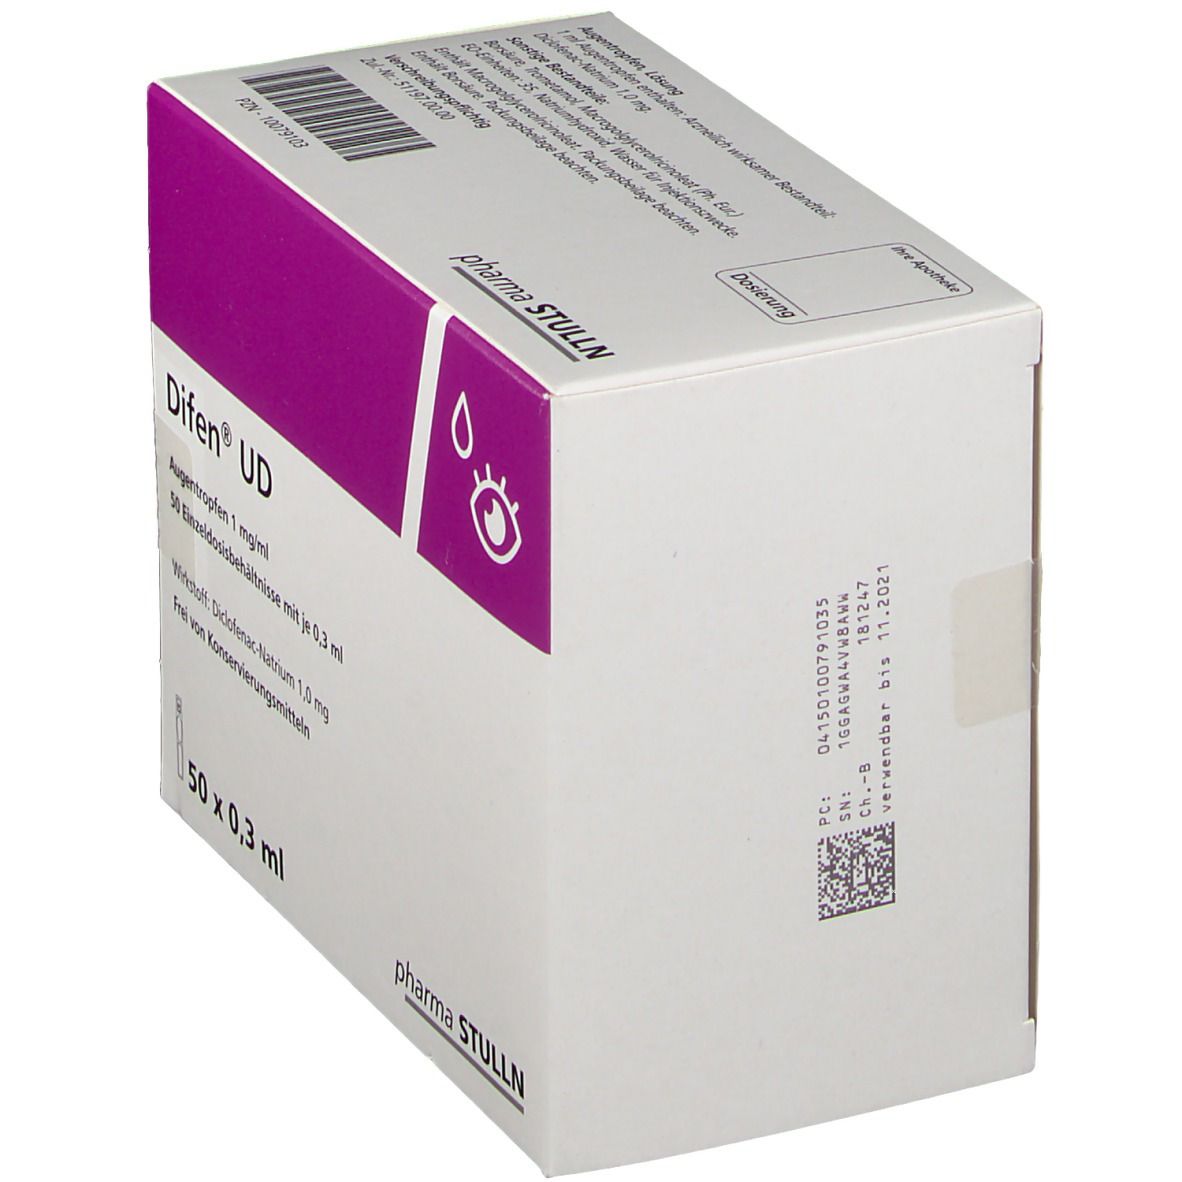 Difen® UD 1 mg/ml